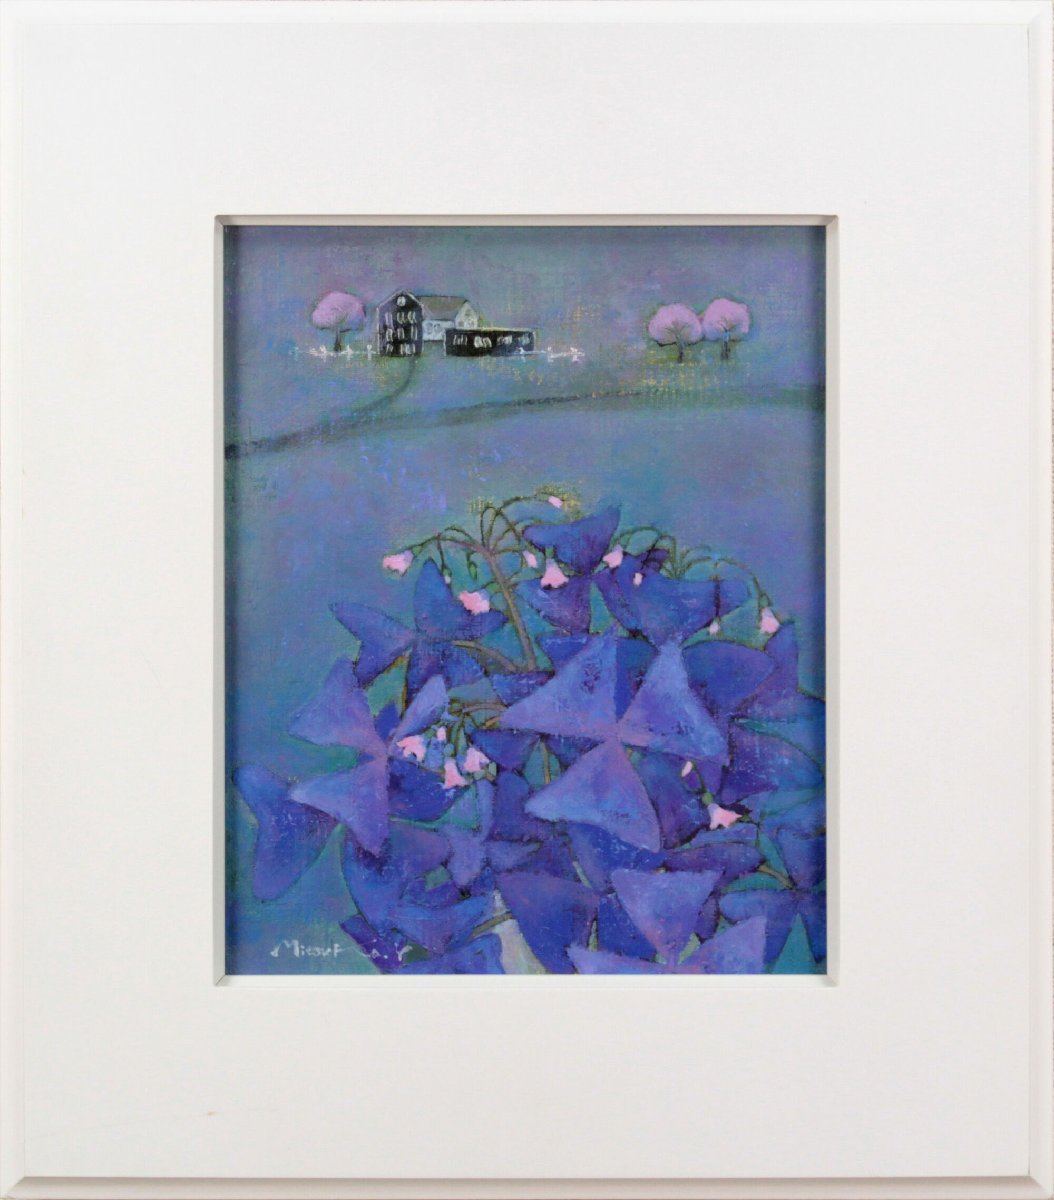 لوحة زيتية ميتسوكو يوشي هاجس الزهور [أصلية مضمونة] - معرض هوكايدو, تلوين, طلاء زيتي, طبيعة, رسم مناظر طبيعية